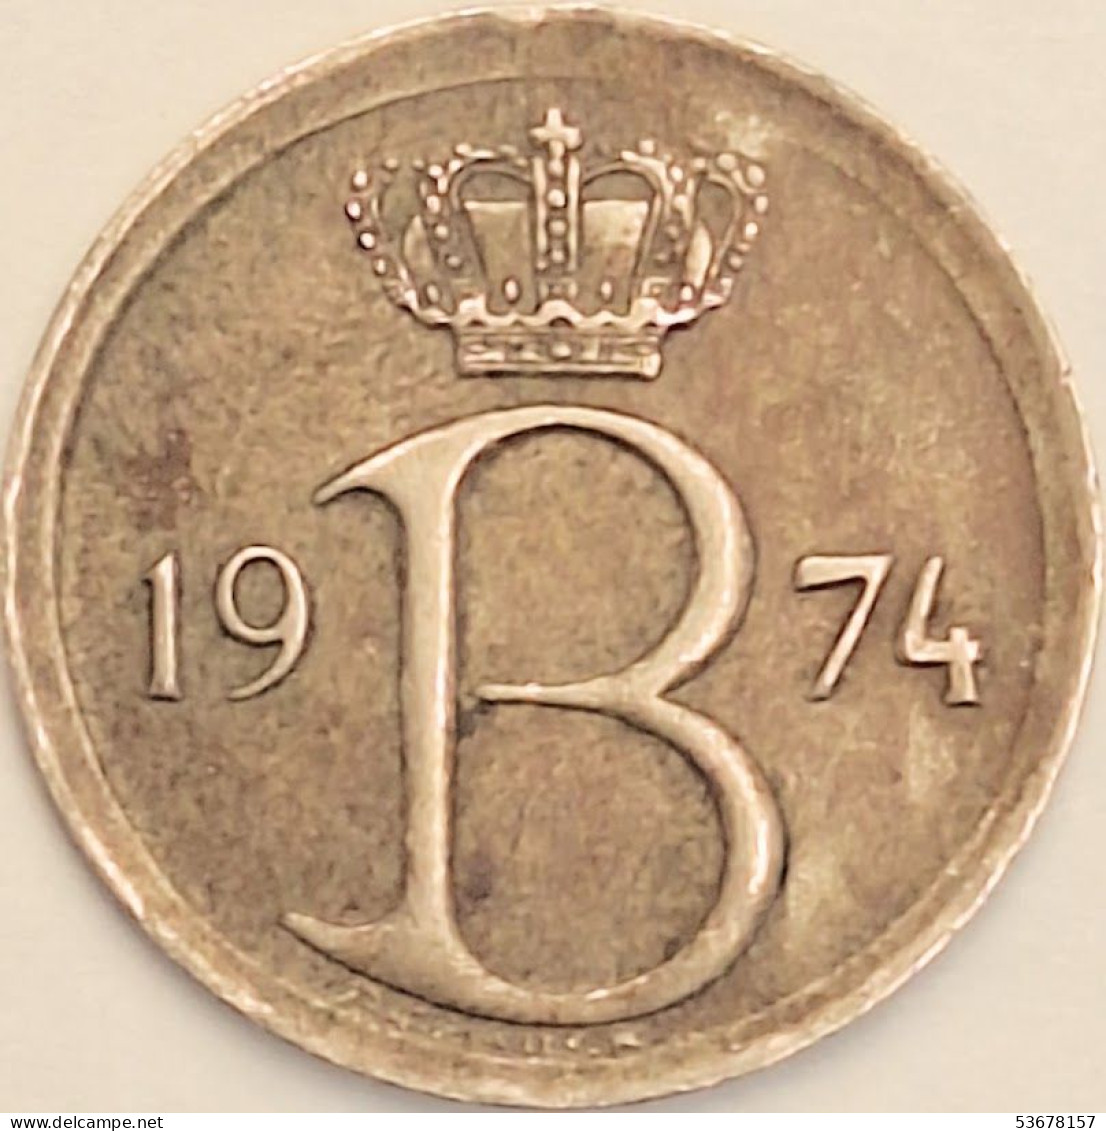 Belgium - 25 Centimes 1974, KM# 154.1 (#3087) - 25 Cents